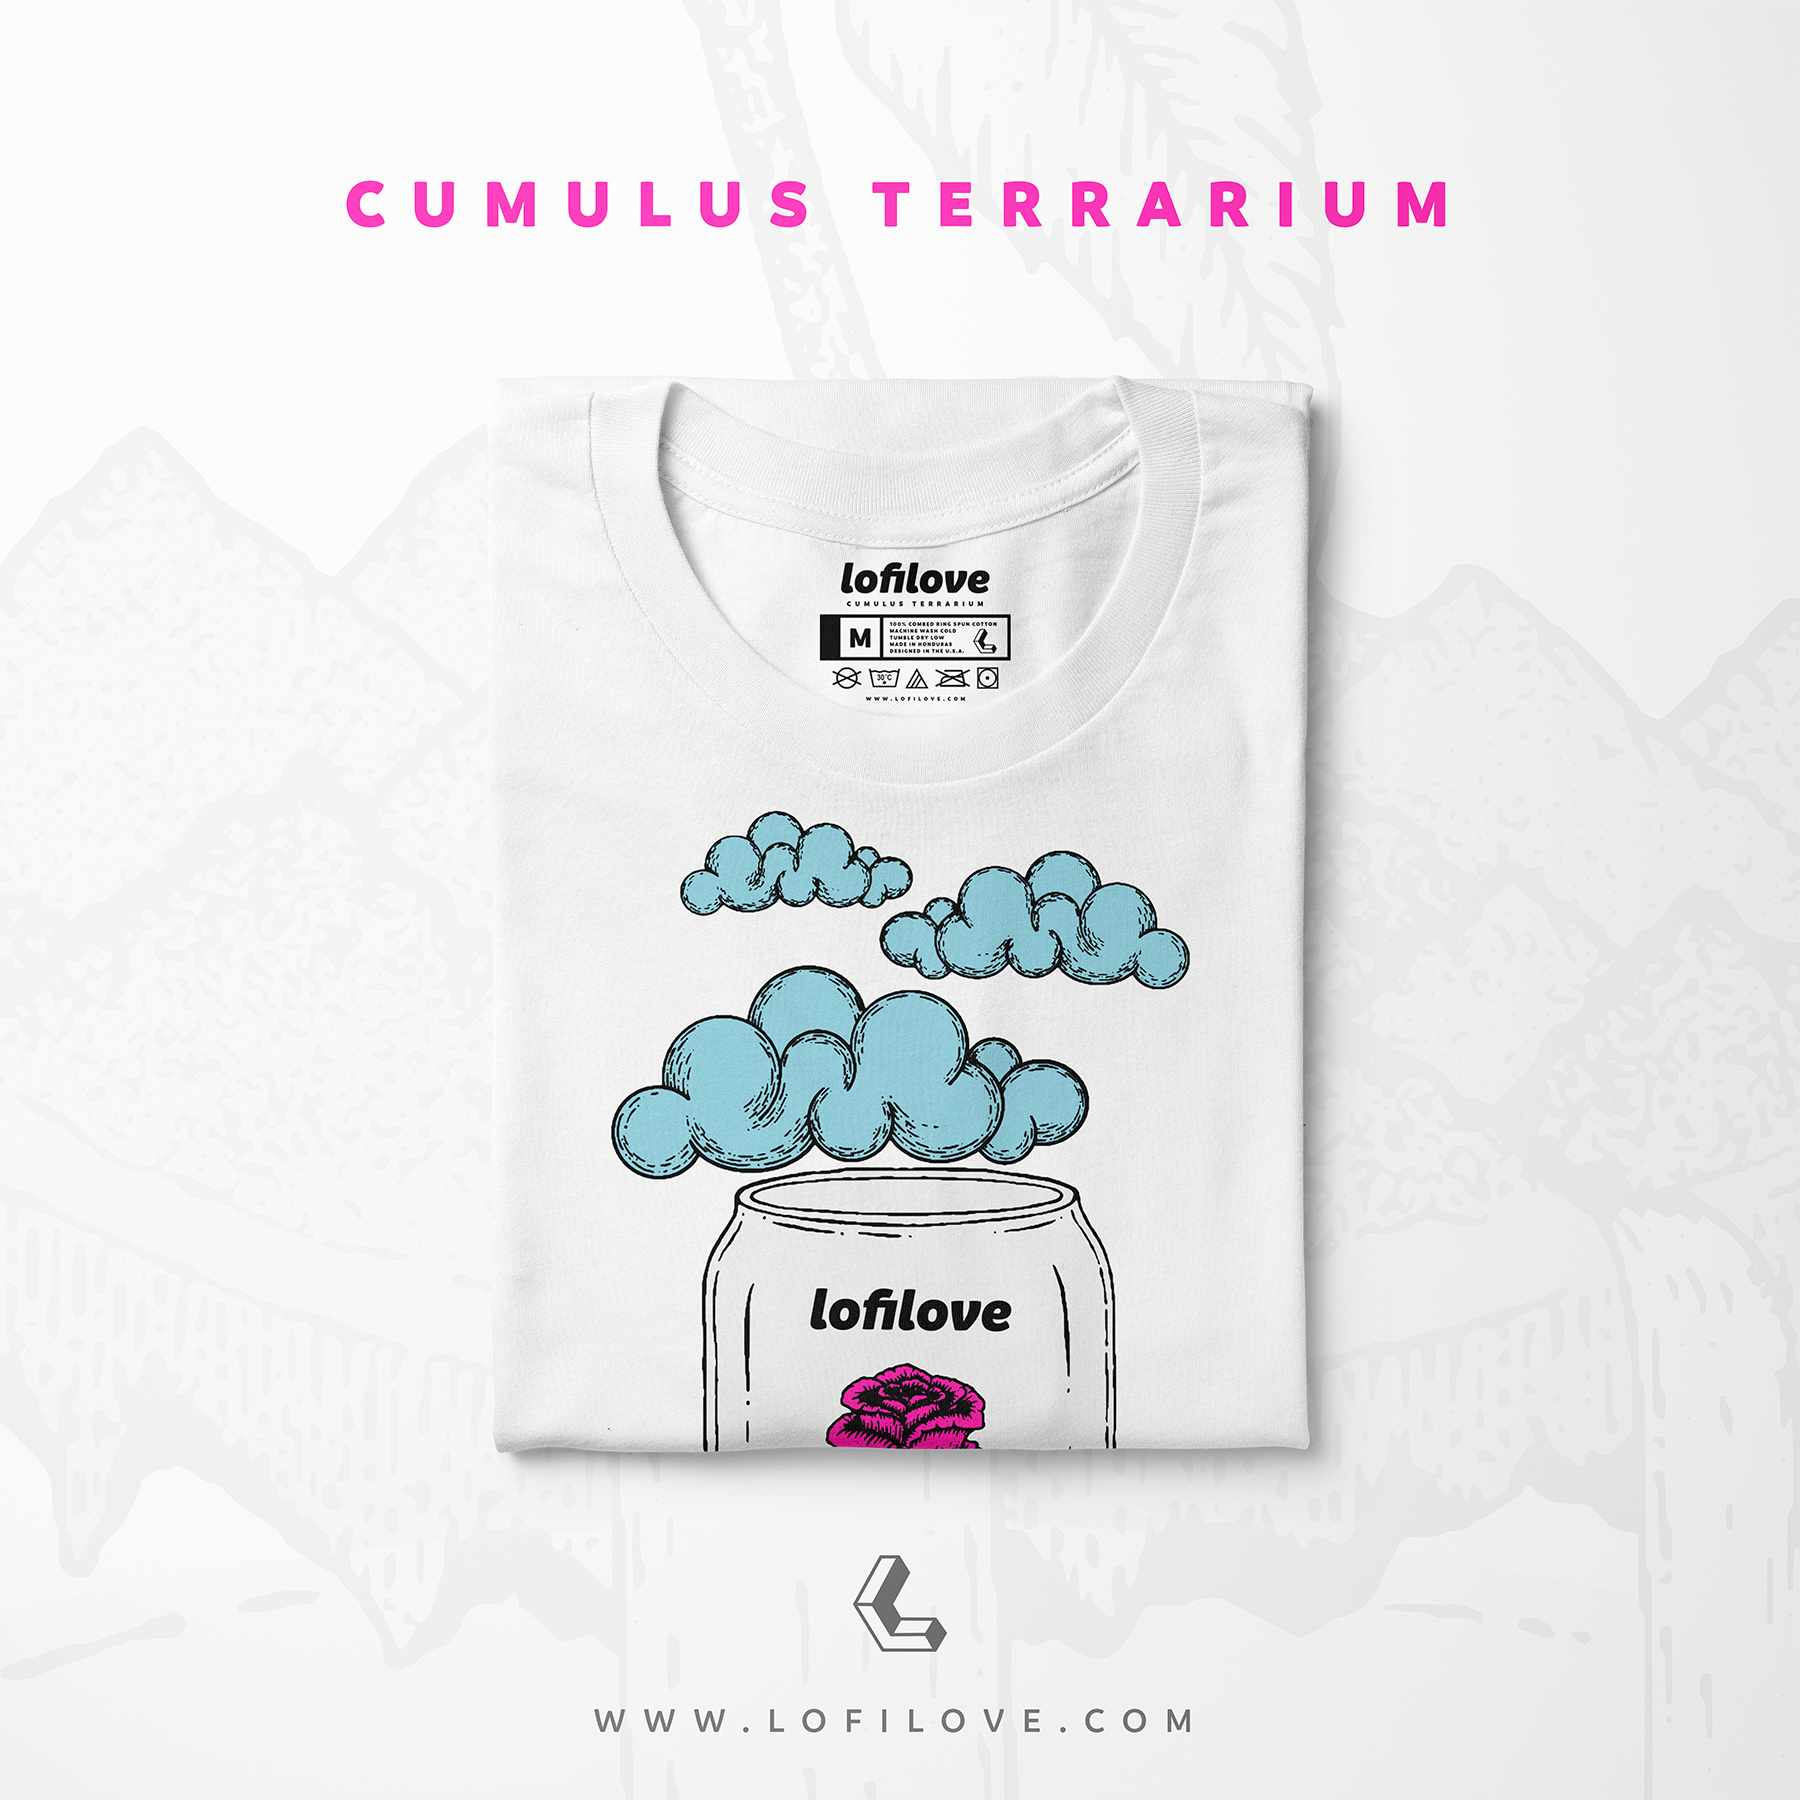 lofilove-cumulus-terrarium-tee-2